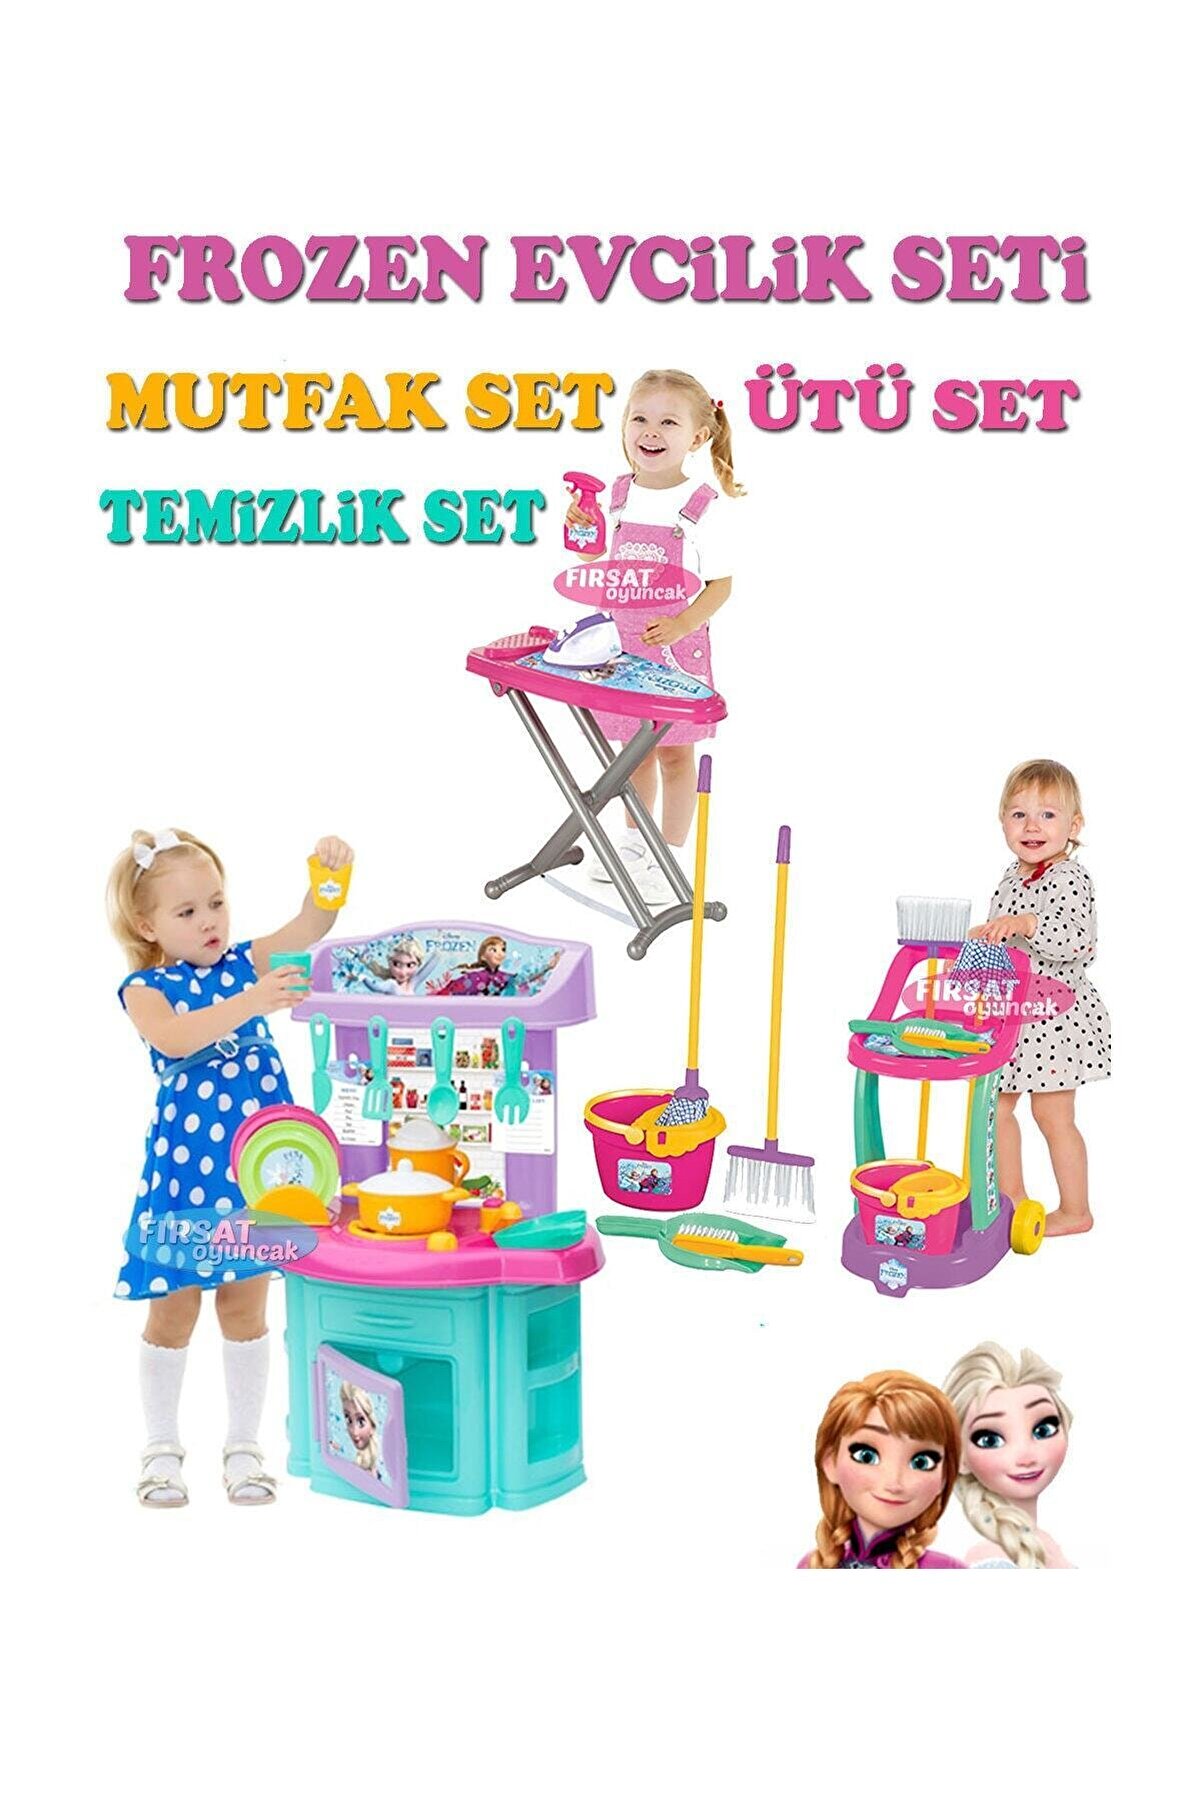 DEDE Toys Frozen Mutfak Ütü Temizlik Set Evcilik Set